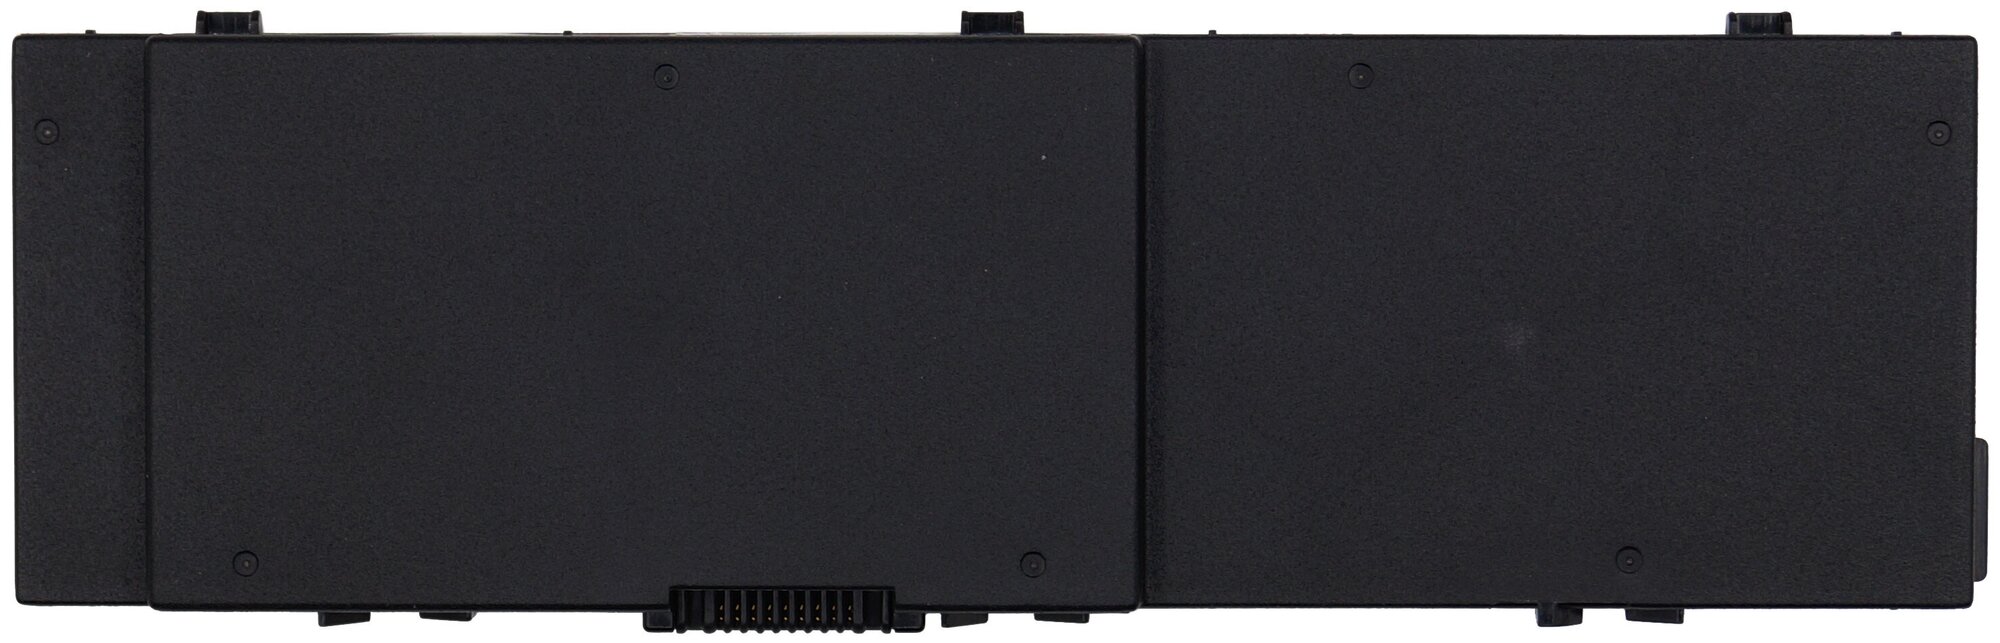 Клавиатура для ноутбука Acer Aspire Timeline 3410, 4740 черная